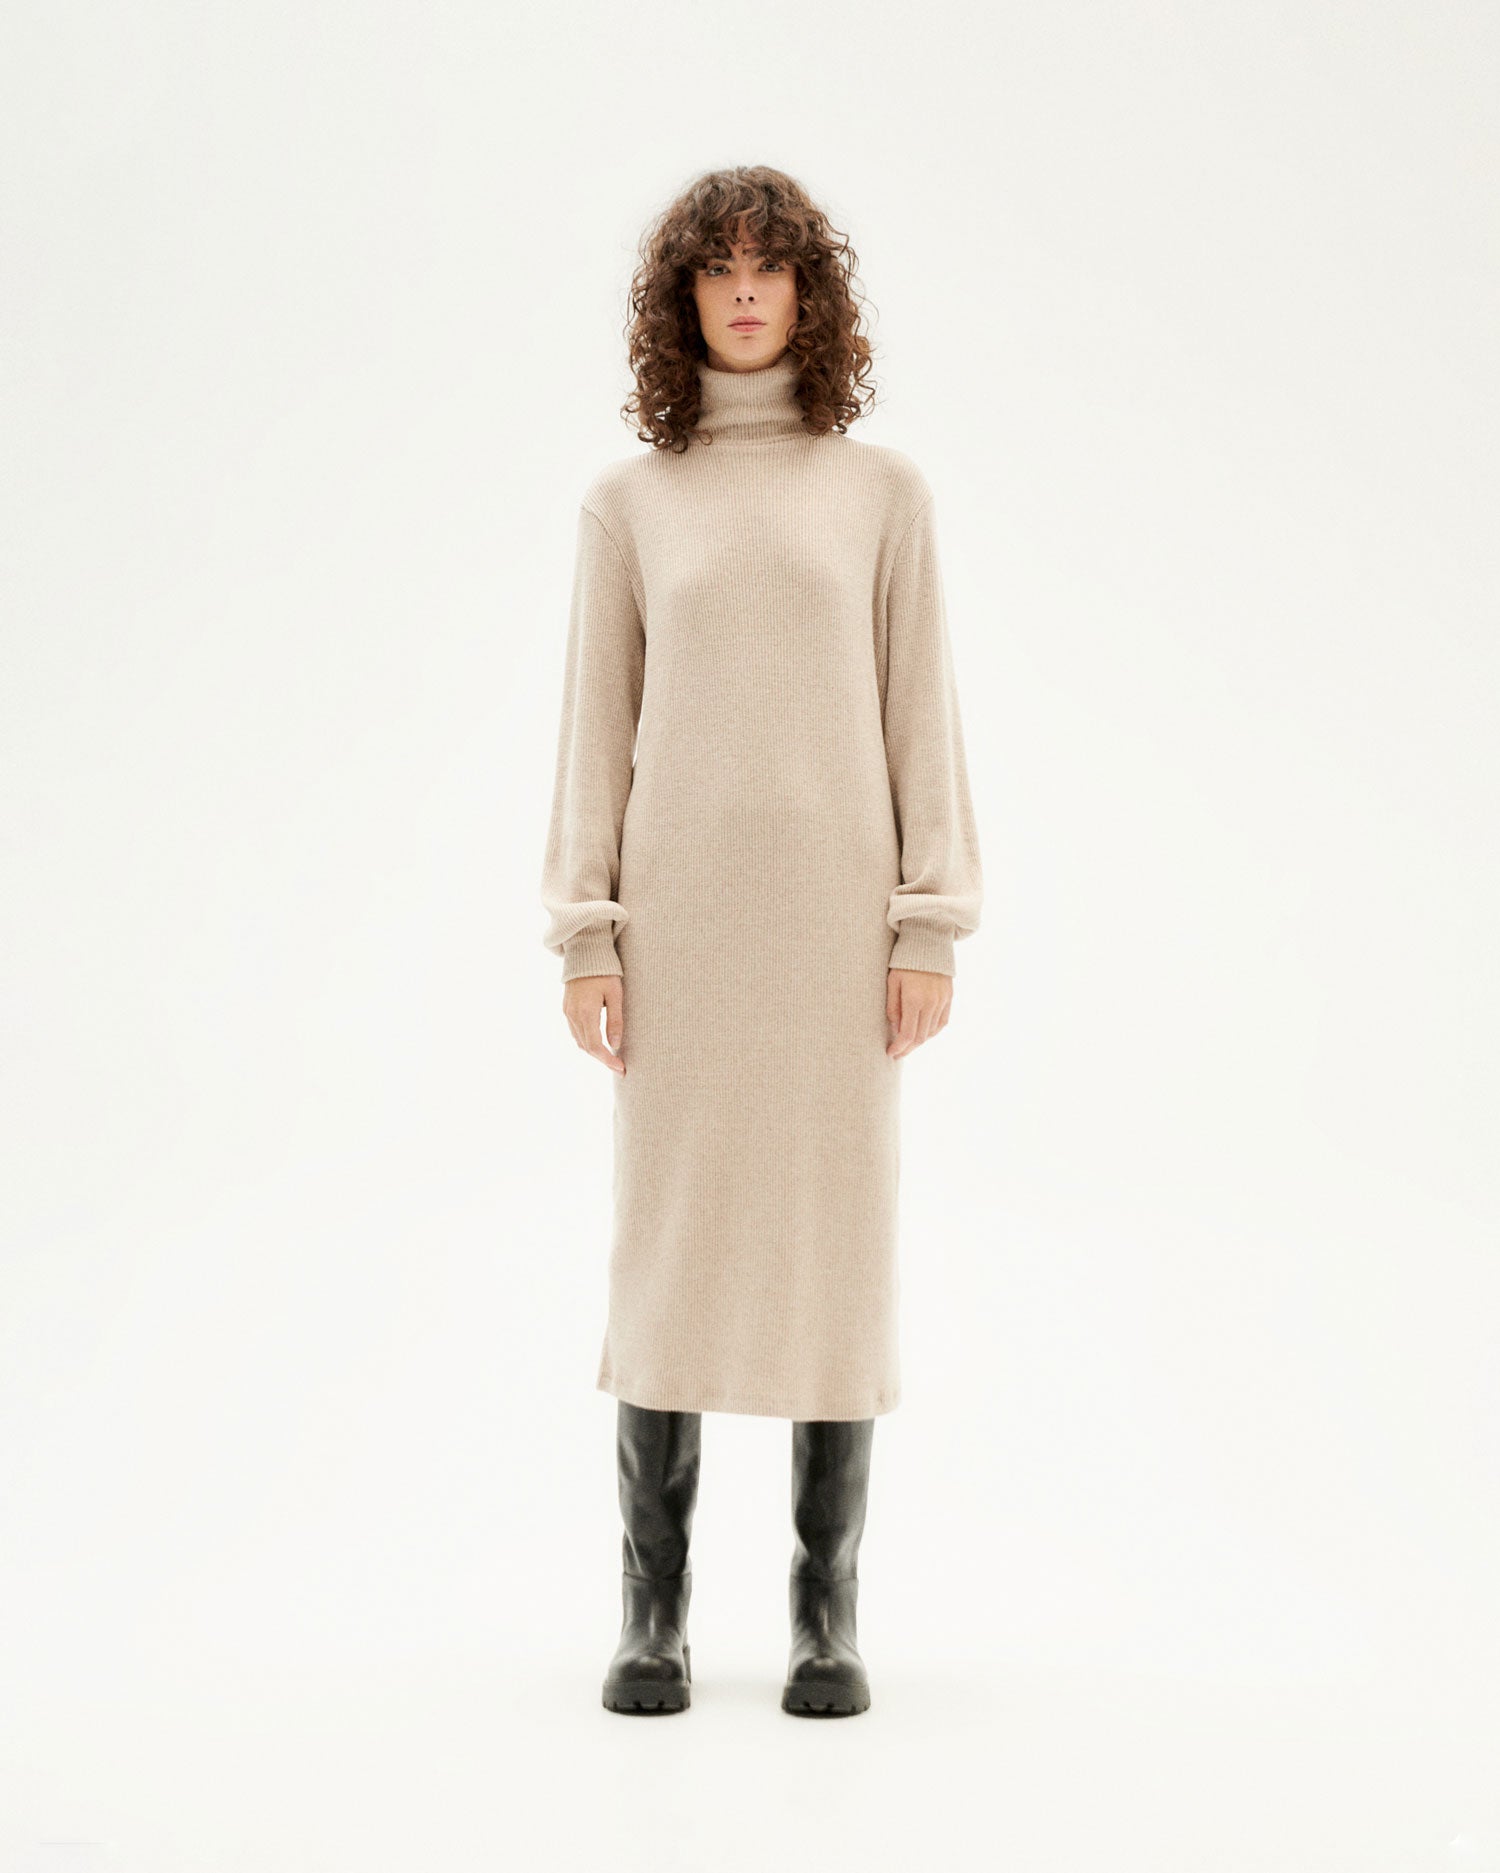 MU knitted | woman Amaia dress cotton Camel organic Thinking